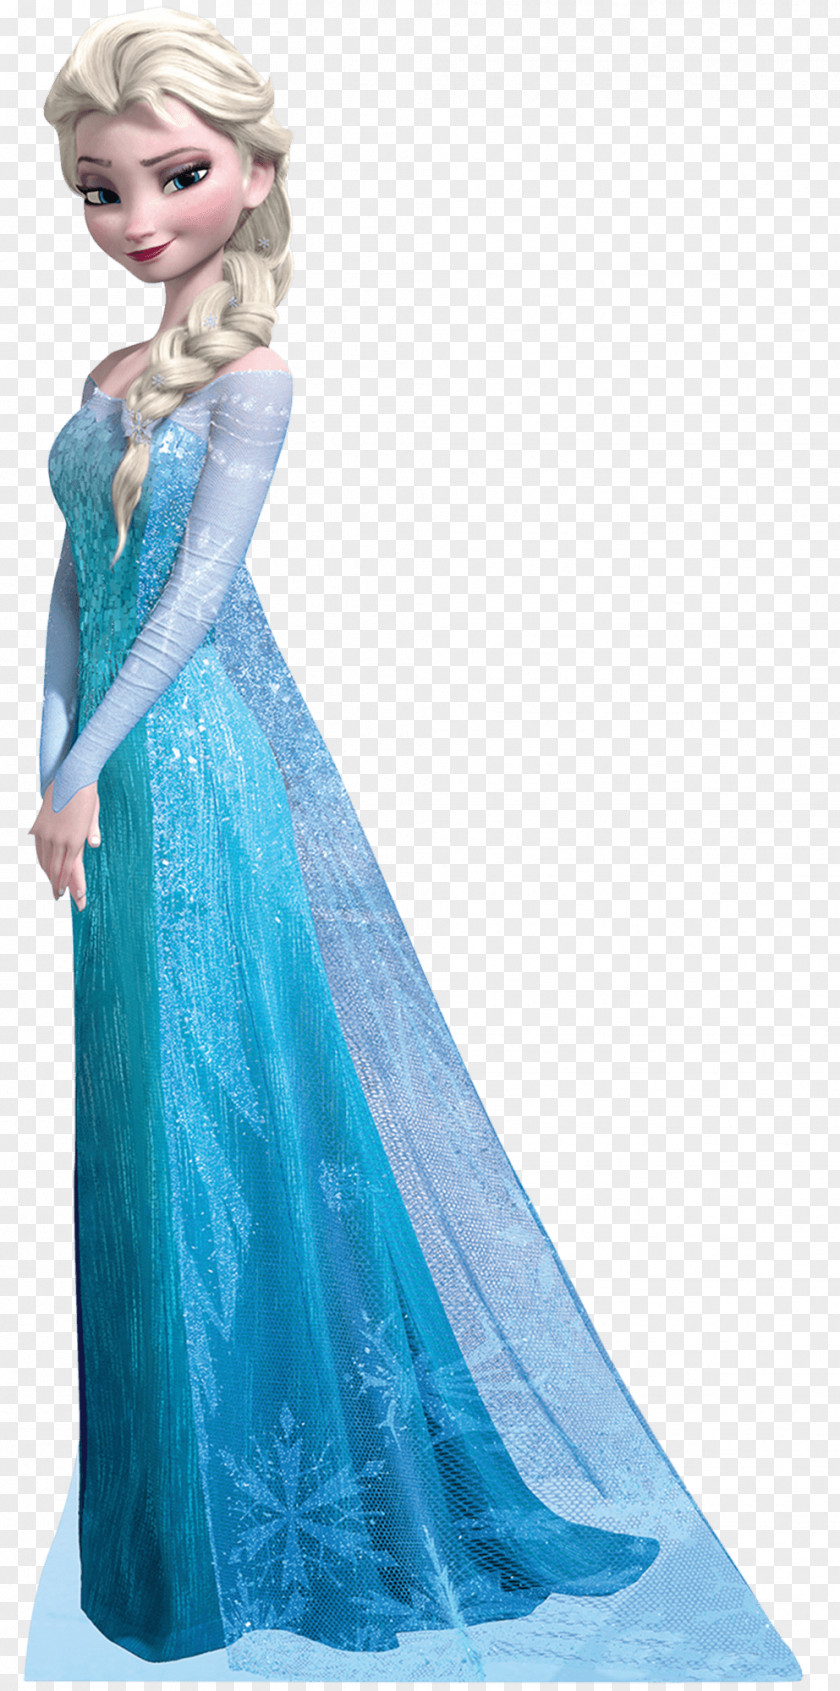 Frozen Elsa Kristoff The Snow Queen Rapunzel PNG